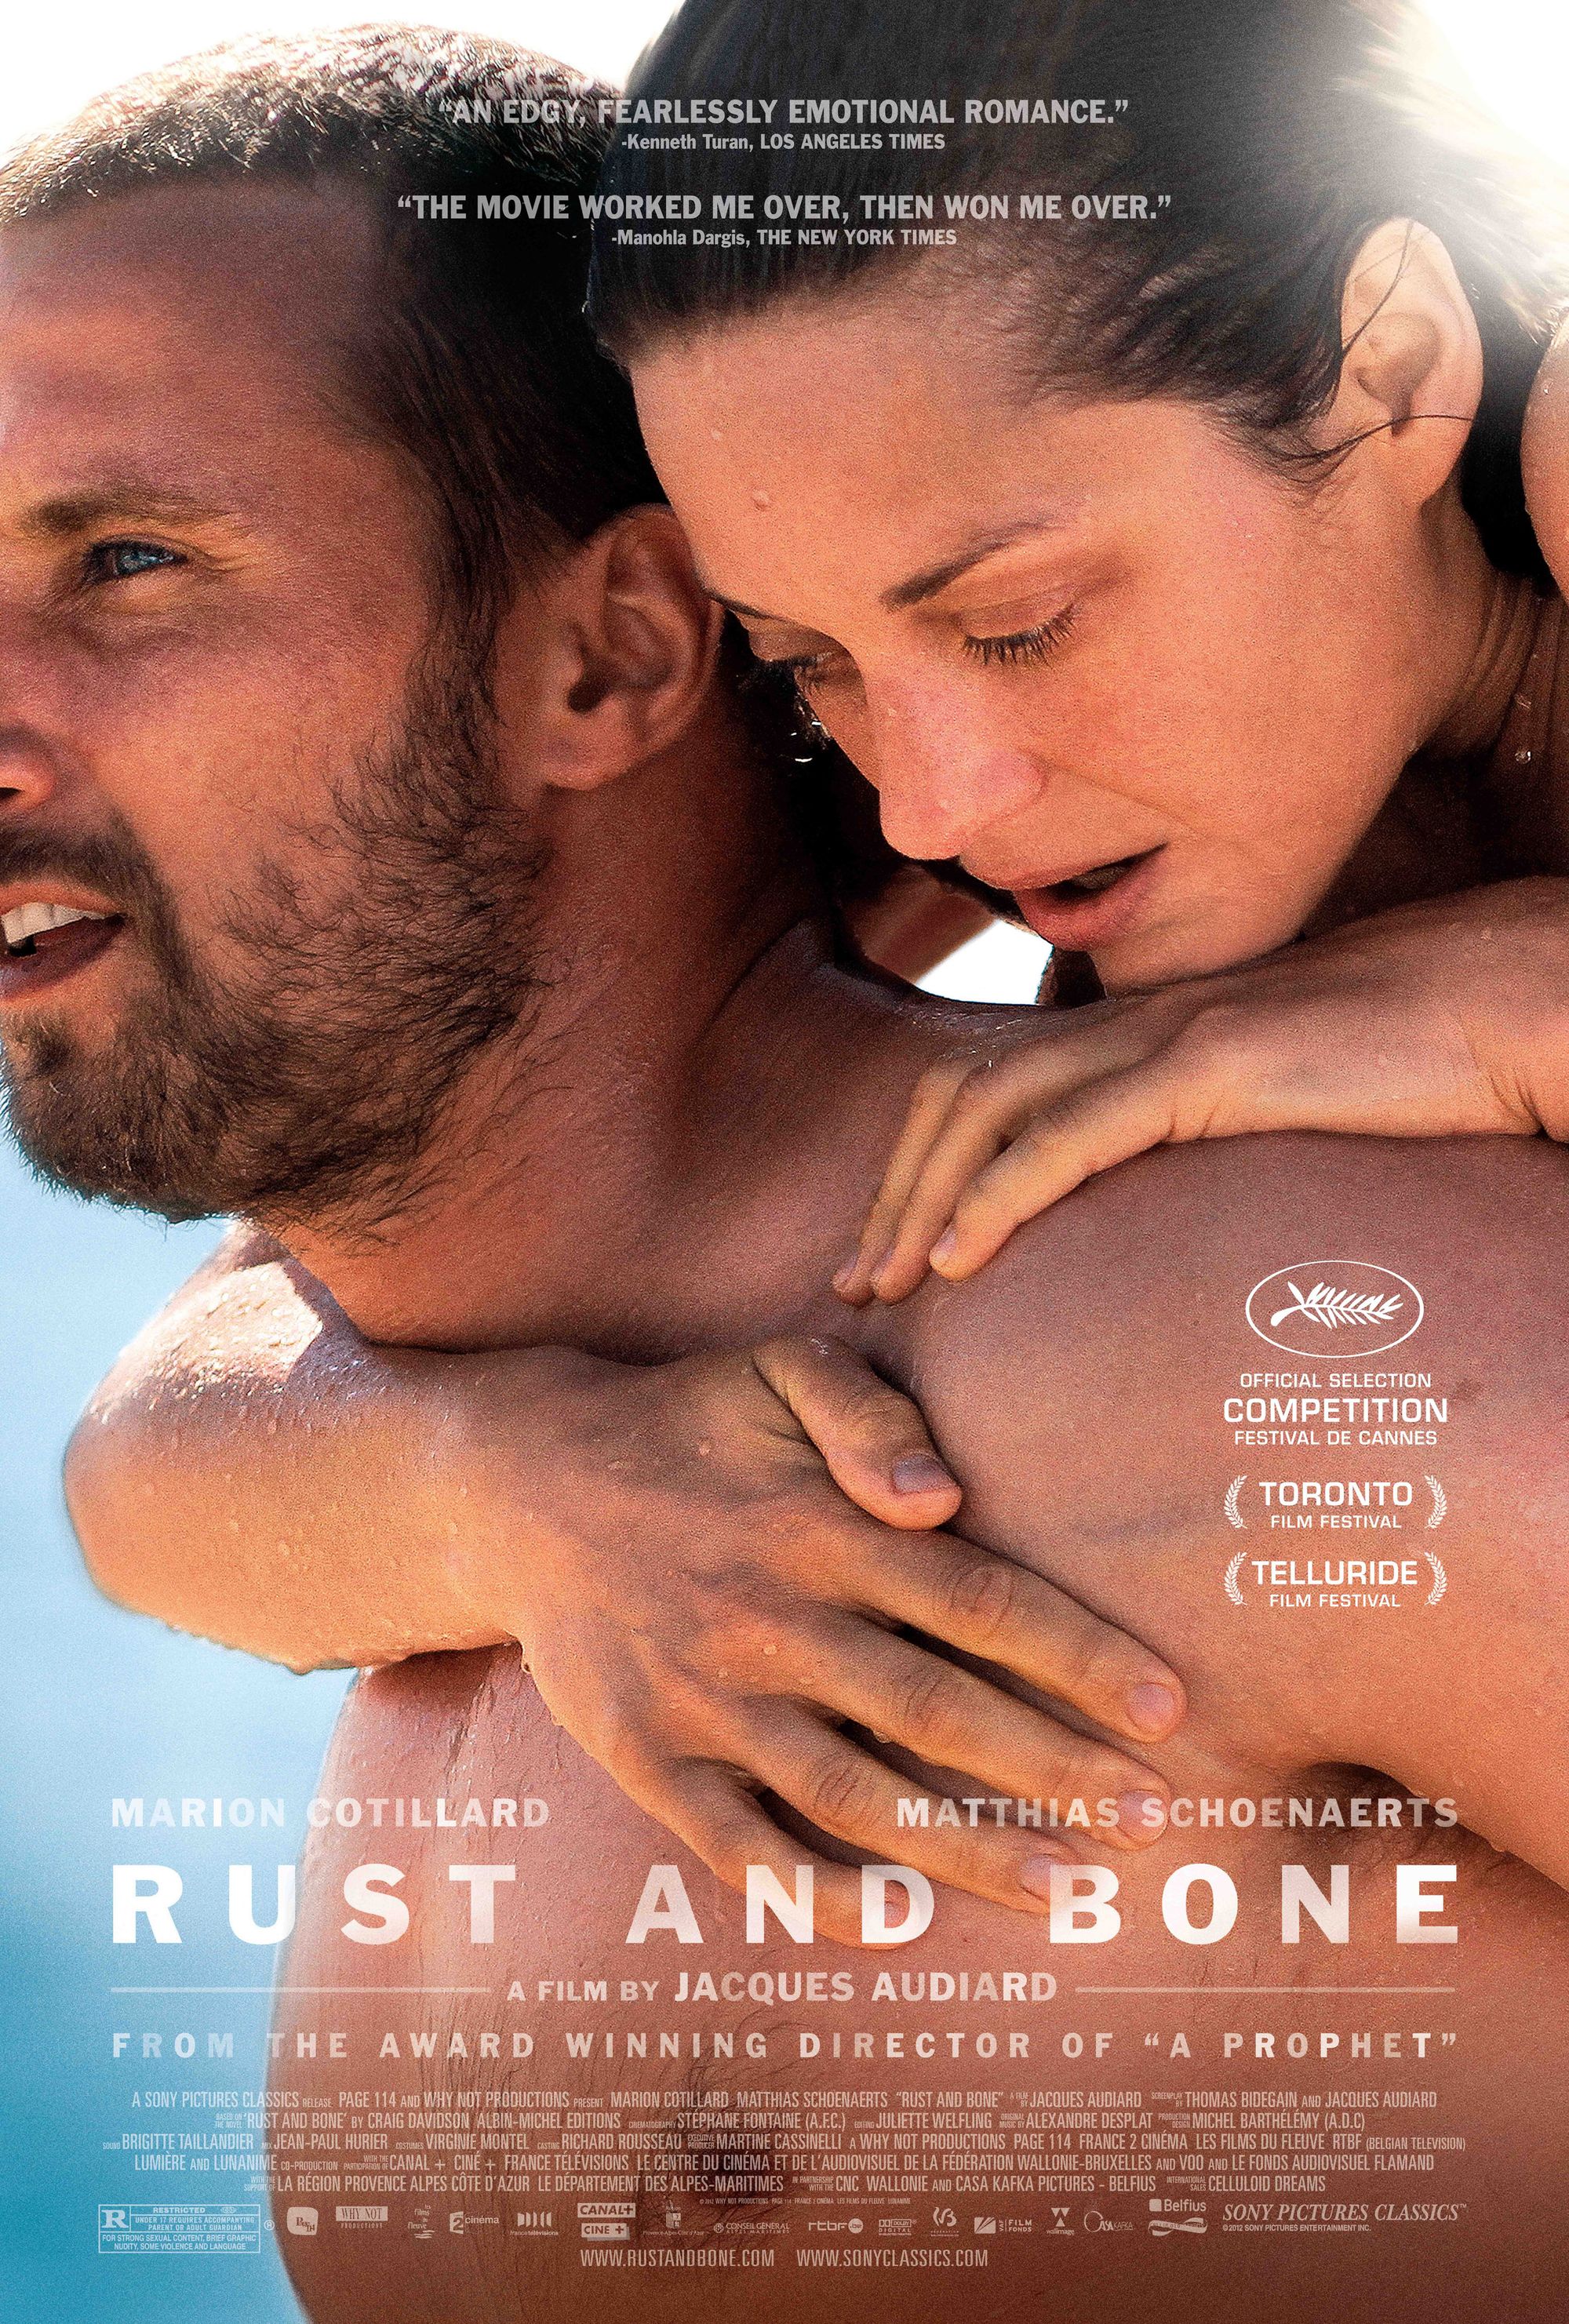 เรื่องราวของความรัก การสูญเสีย และการไถ่ถอน: บทวิจารณ์เรื่อง "Rust and Bone" (2012)